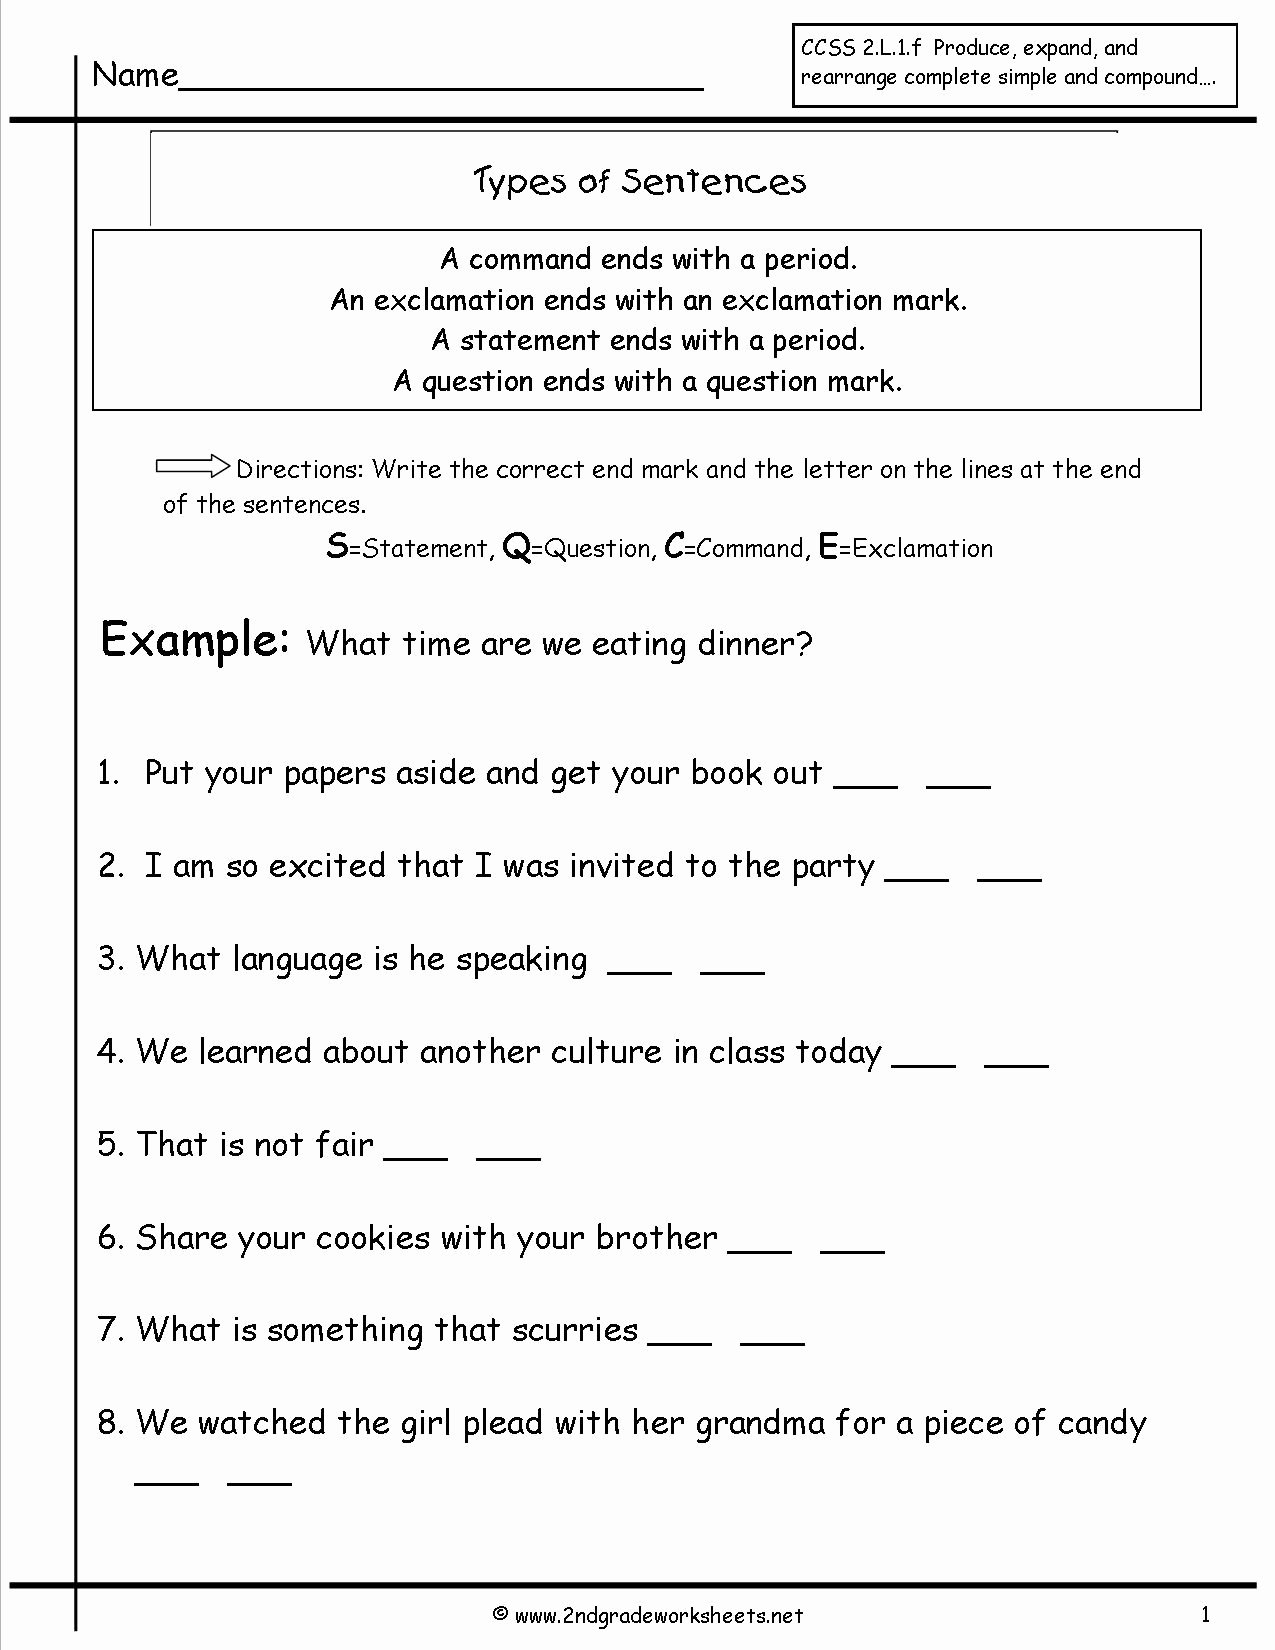 Kinds Of Sentences Worksheet Lovely Second Grade Sentences Worksheets Ccss 2 L 1 F Worksheets